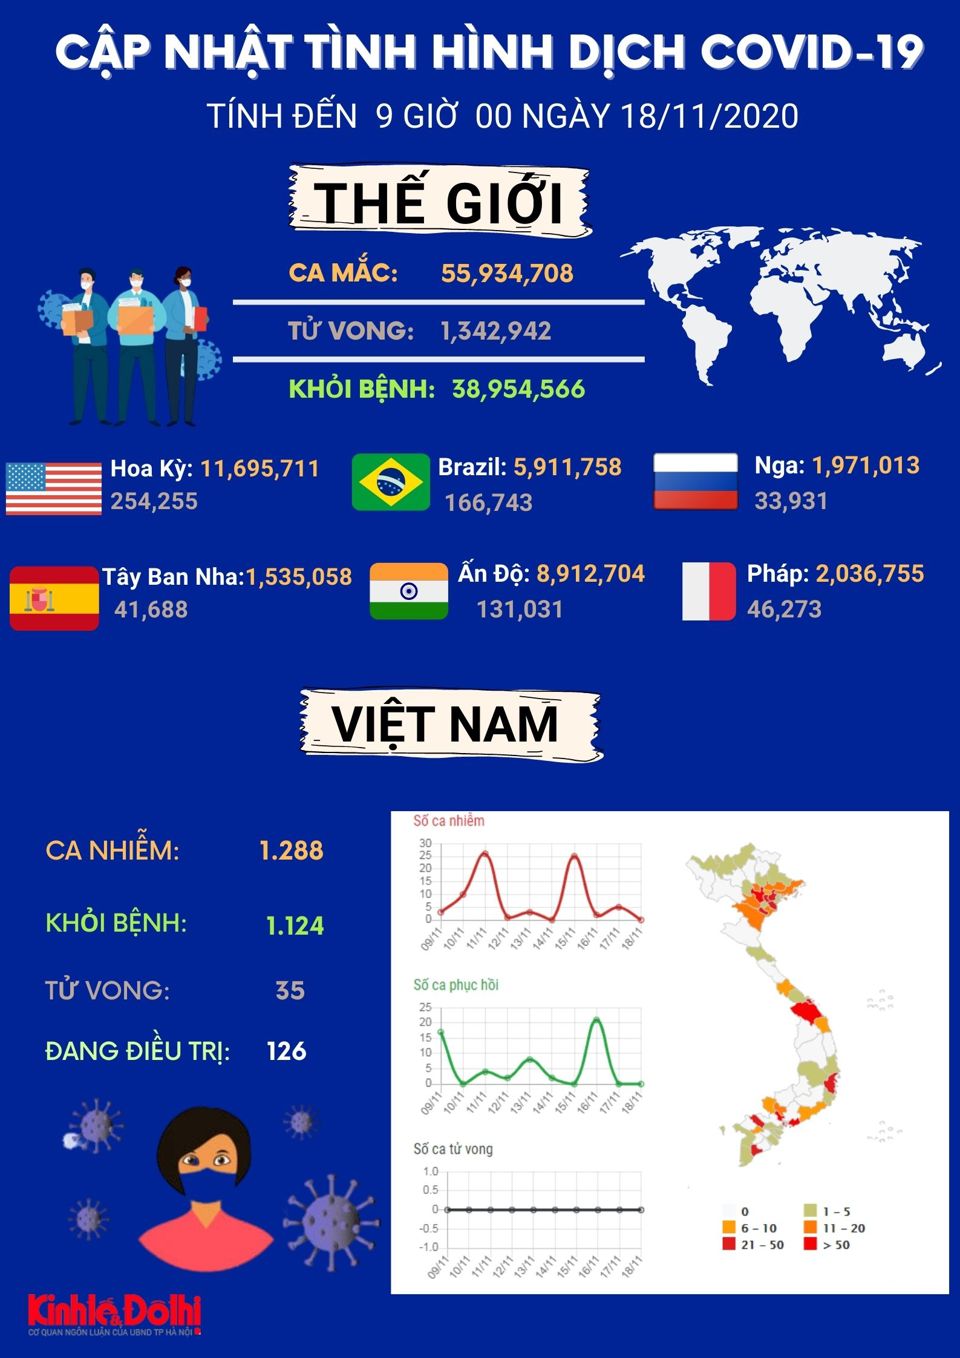 [Infographic] Dịch Covid-19 trên toàn cầu vẫn rất nghiêm trọng - Ảnh 1